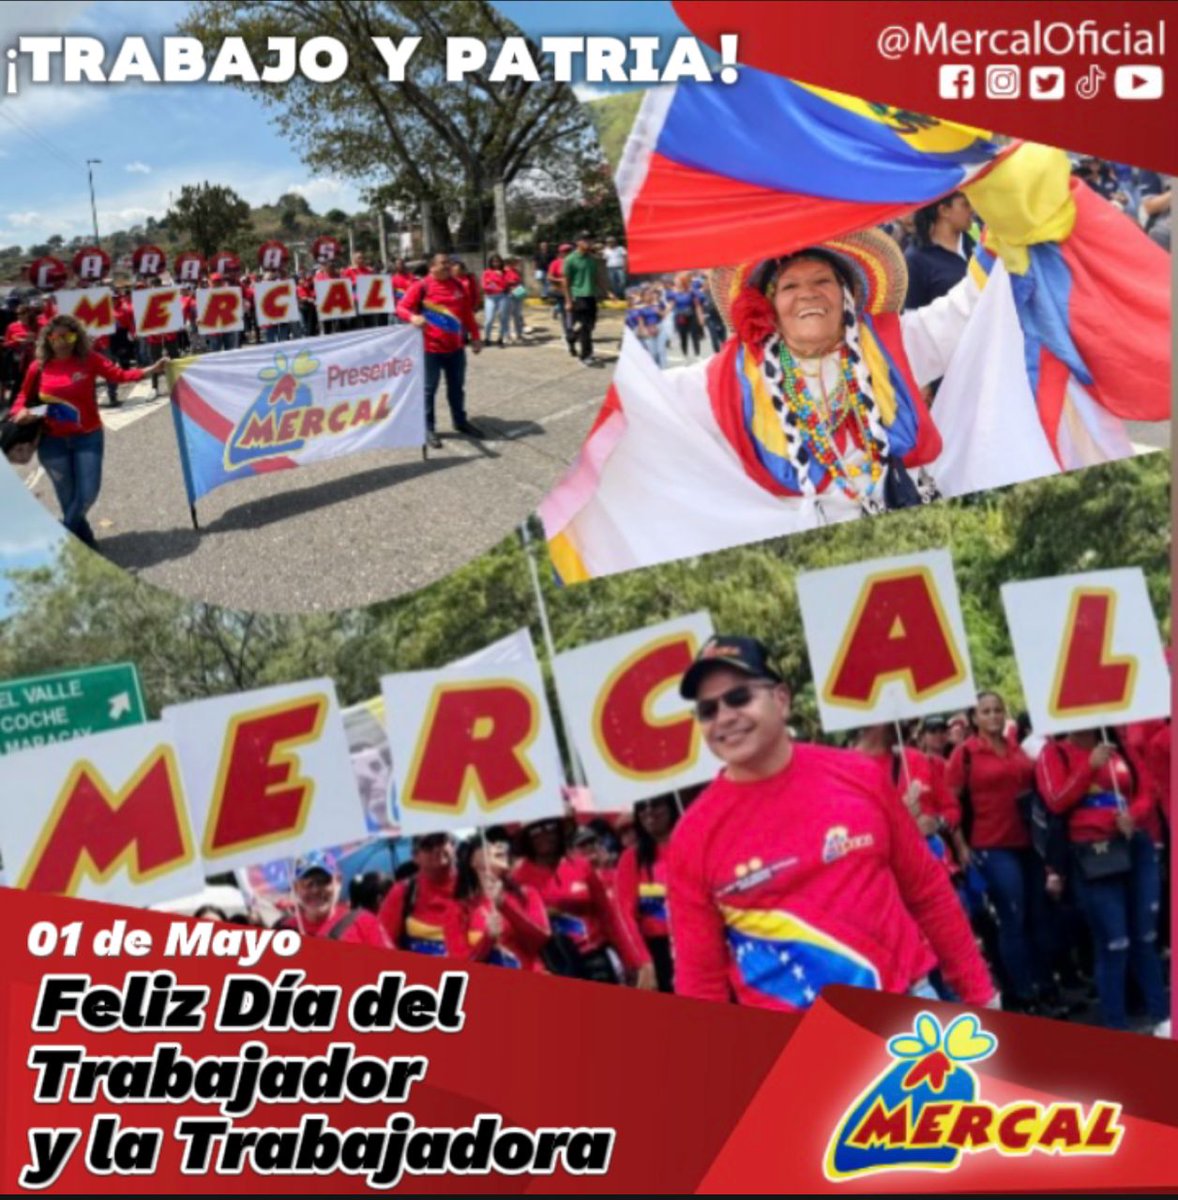 Hoy #1May celebramos el Día del Trabajador y Mercal enaltece la gran labor que realiza la Fuerza trabajadora,quienes han asumido su rol protagónico en la lucha revolucionaria, por ello felicitamos a los que laboran día a día para lograr la excelencia junto al Gobierno Bolivariano